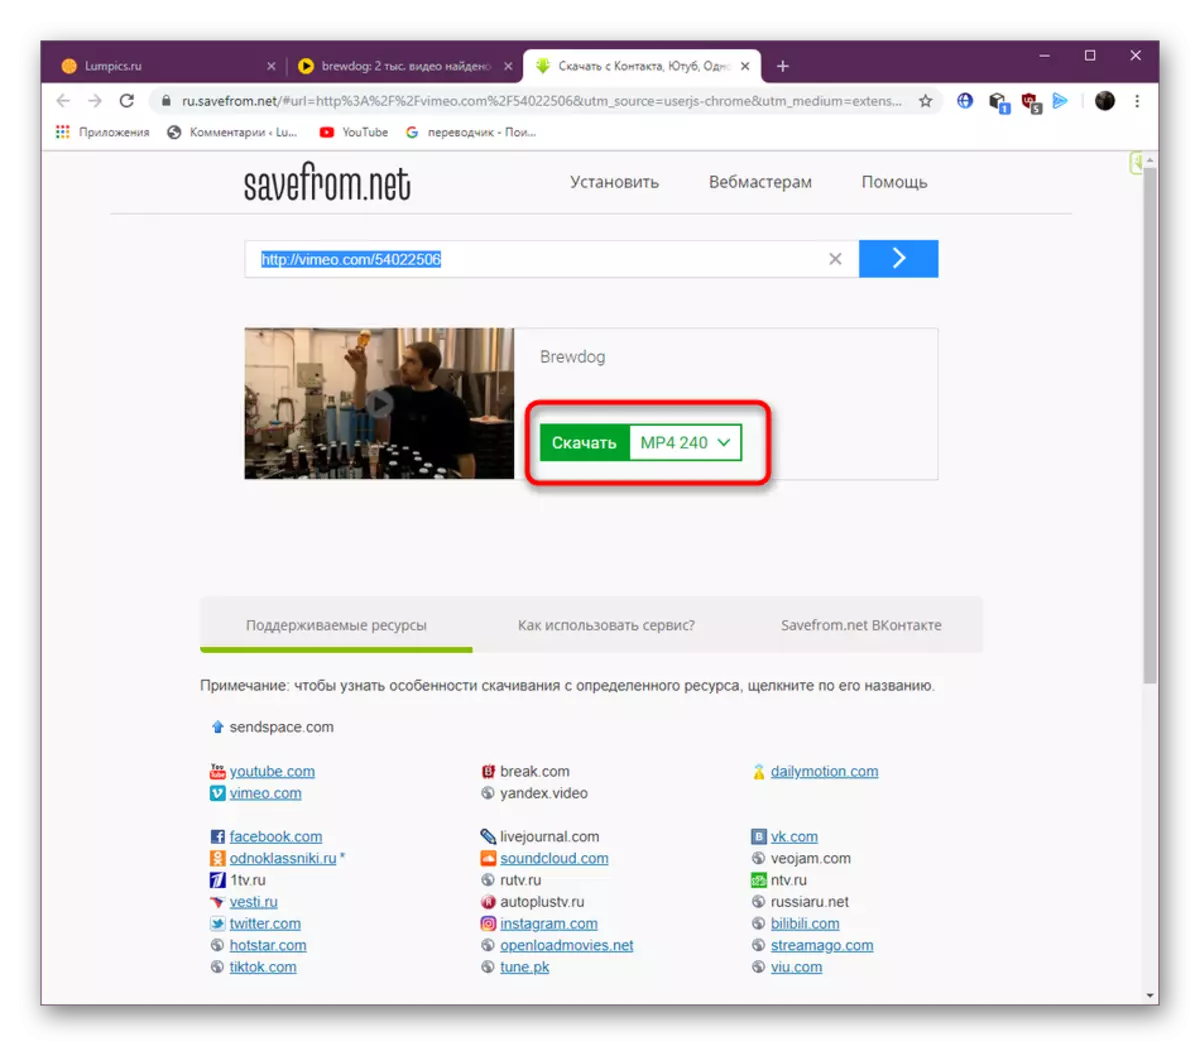 Infoarsjen fan in formaat foar it downloaden fan fideo fia Yandex.video by it brûken fan in plug-in savefrom.net